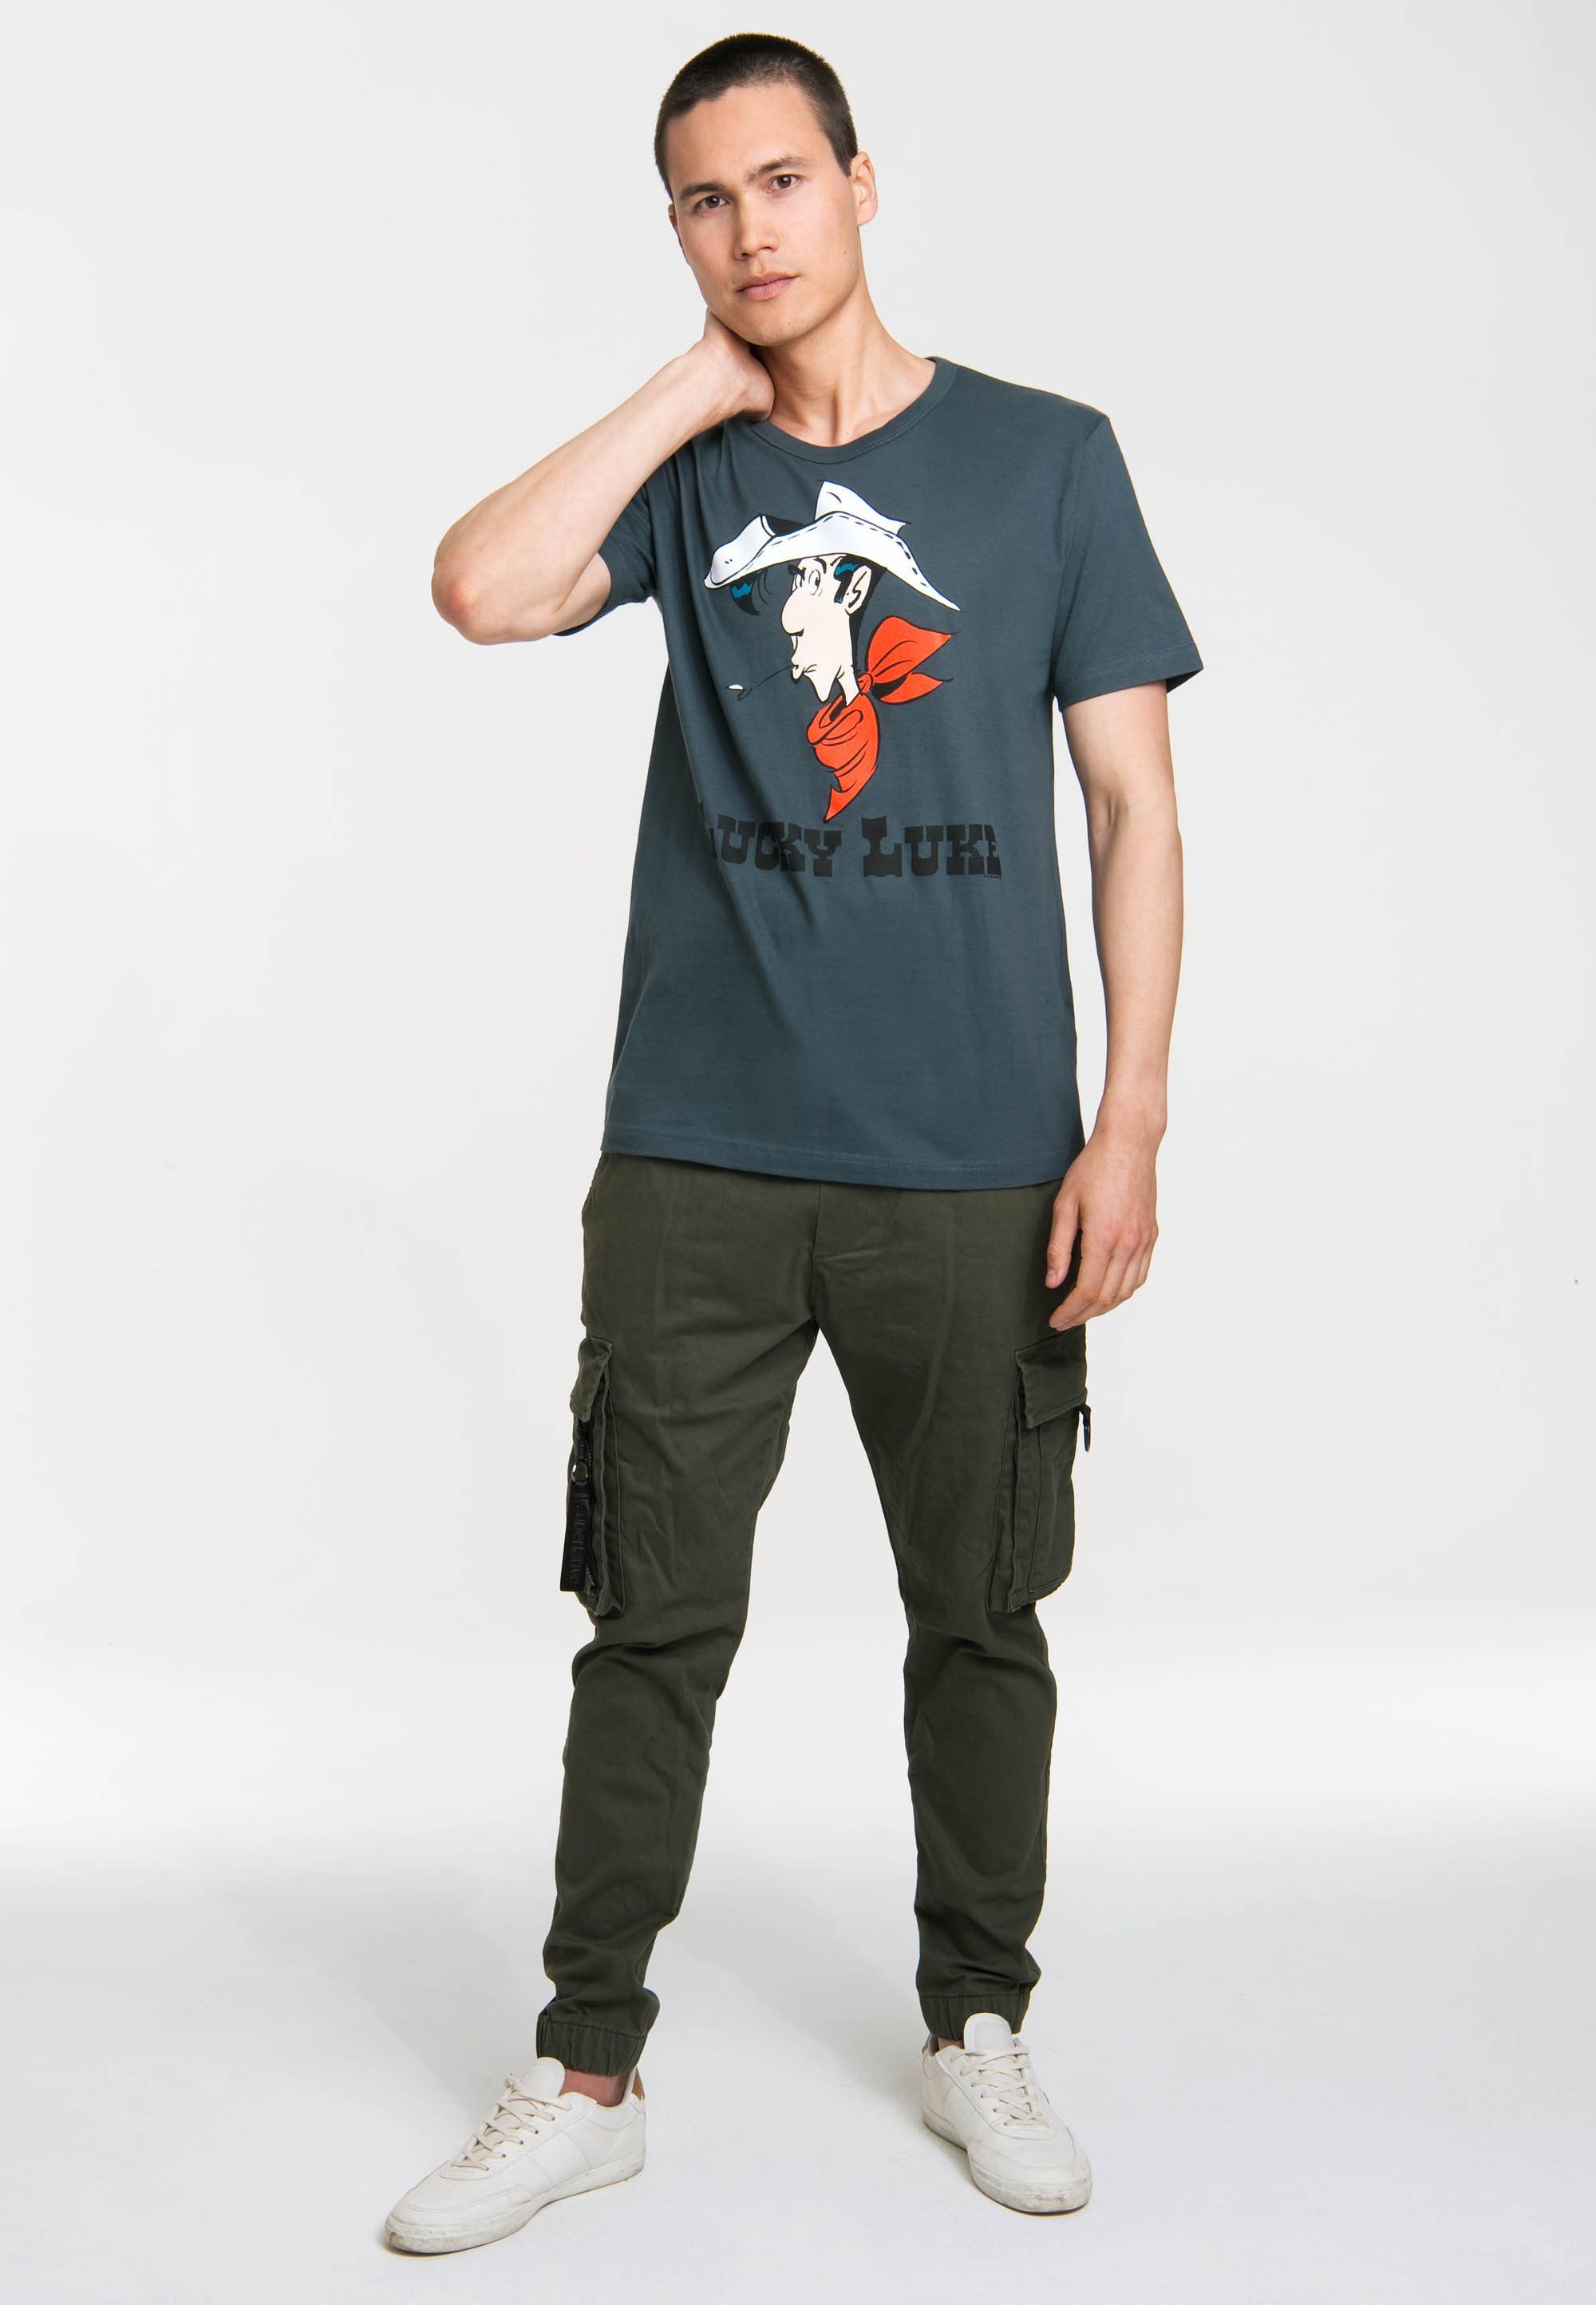 LOGOSHIRT T-Shirt Lucky Luke Portrait mit Aufdruck originellem